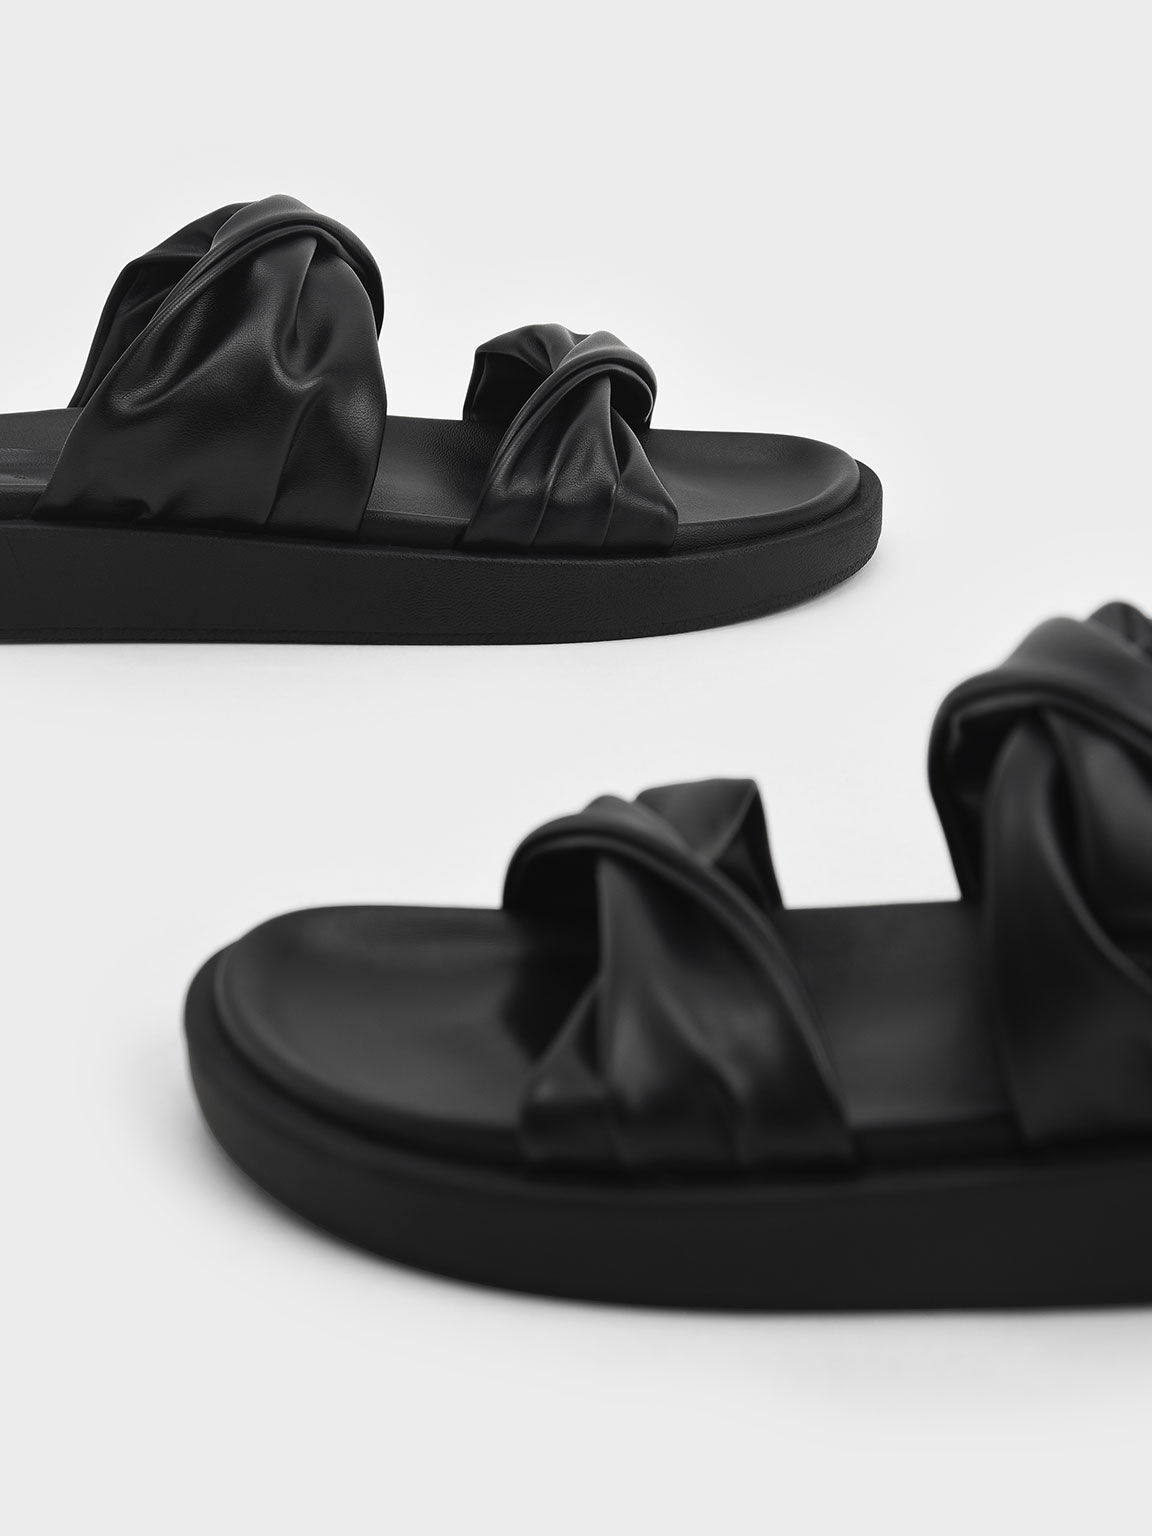 Sandal Slide Twist Strap Padded, Black, hi-res